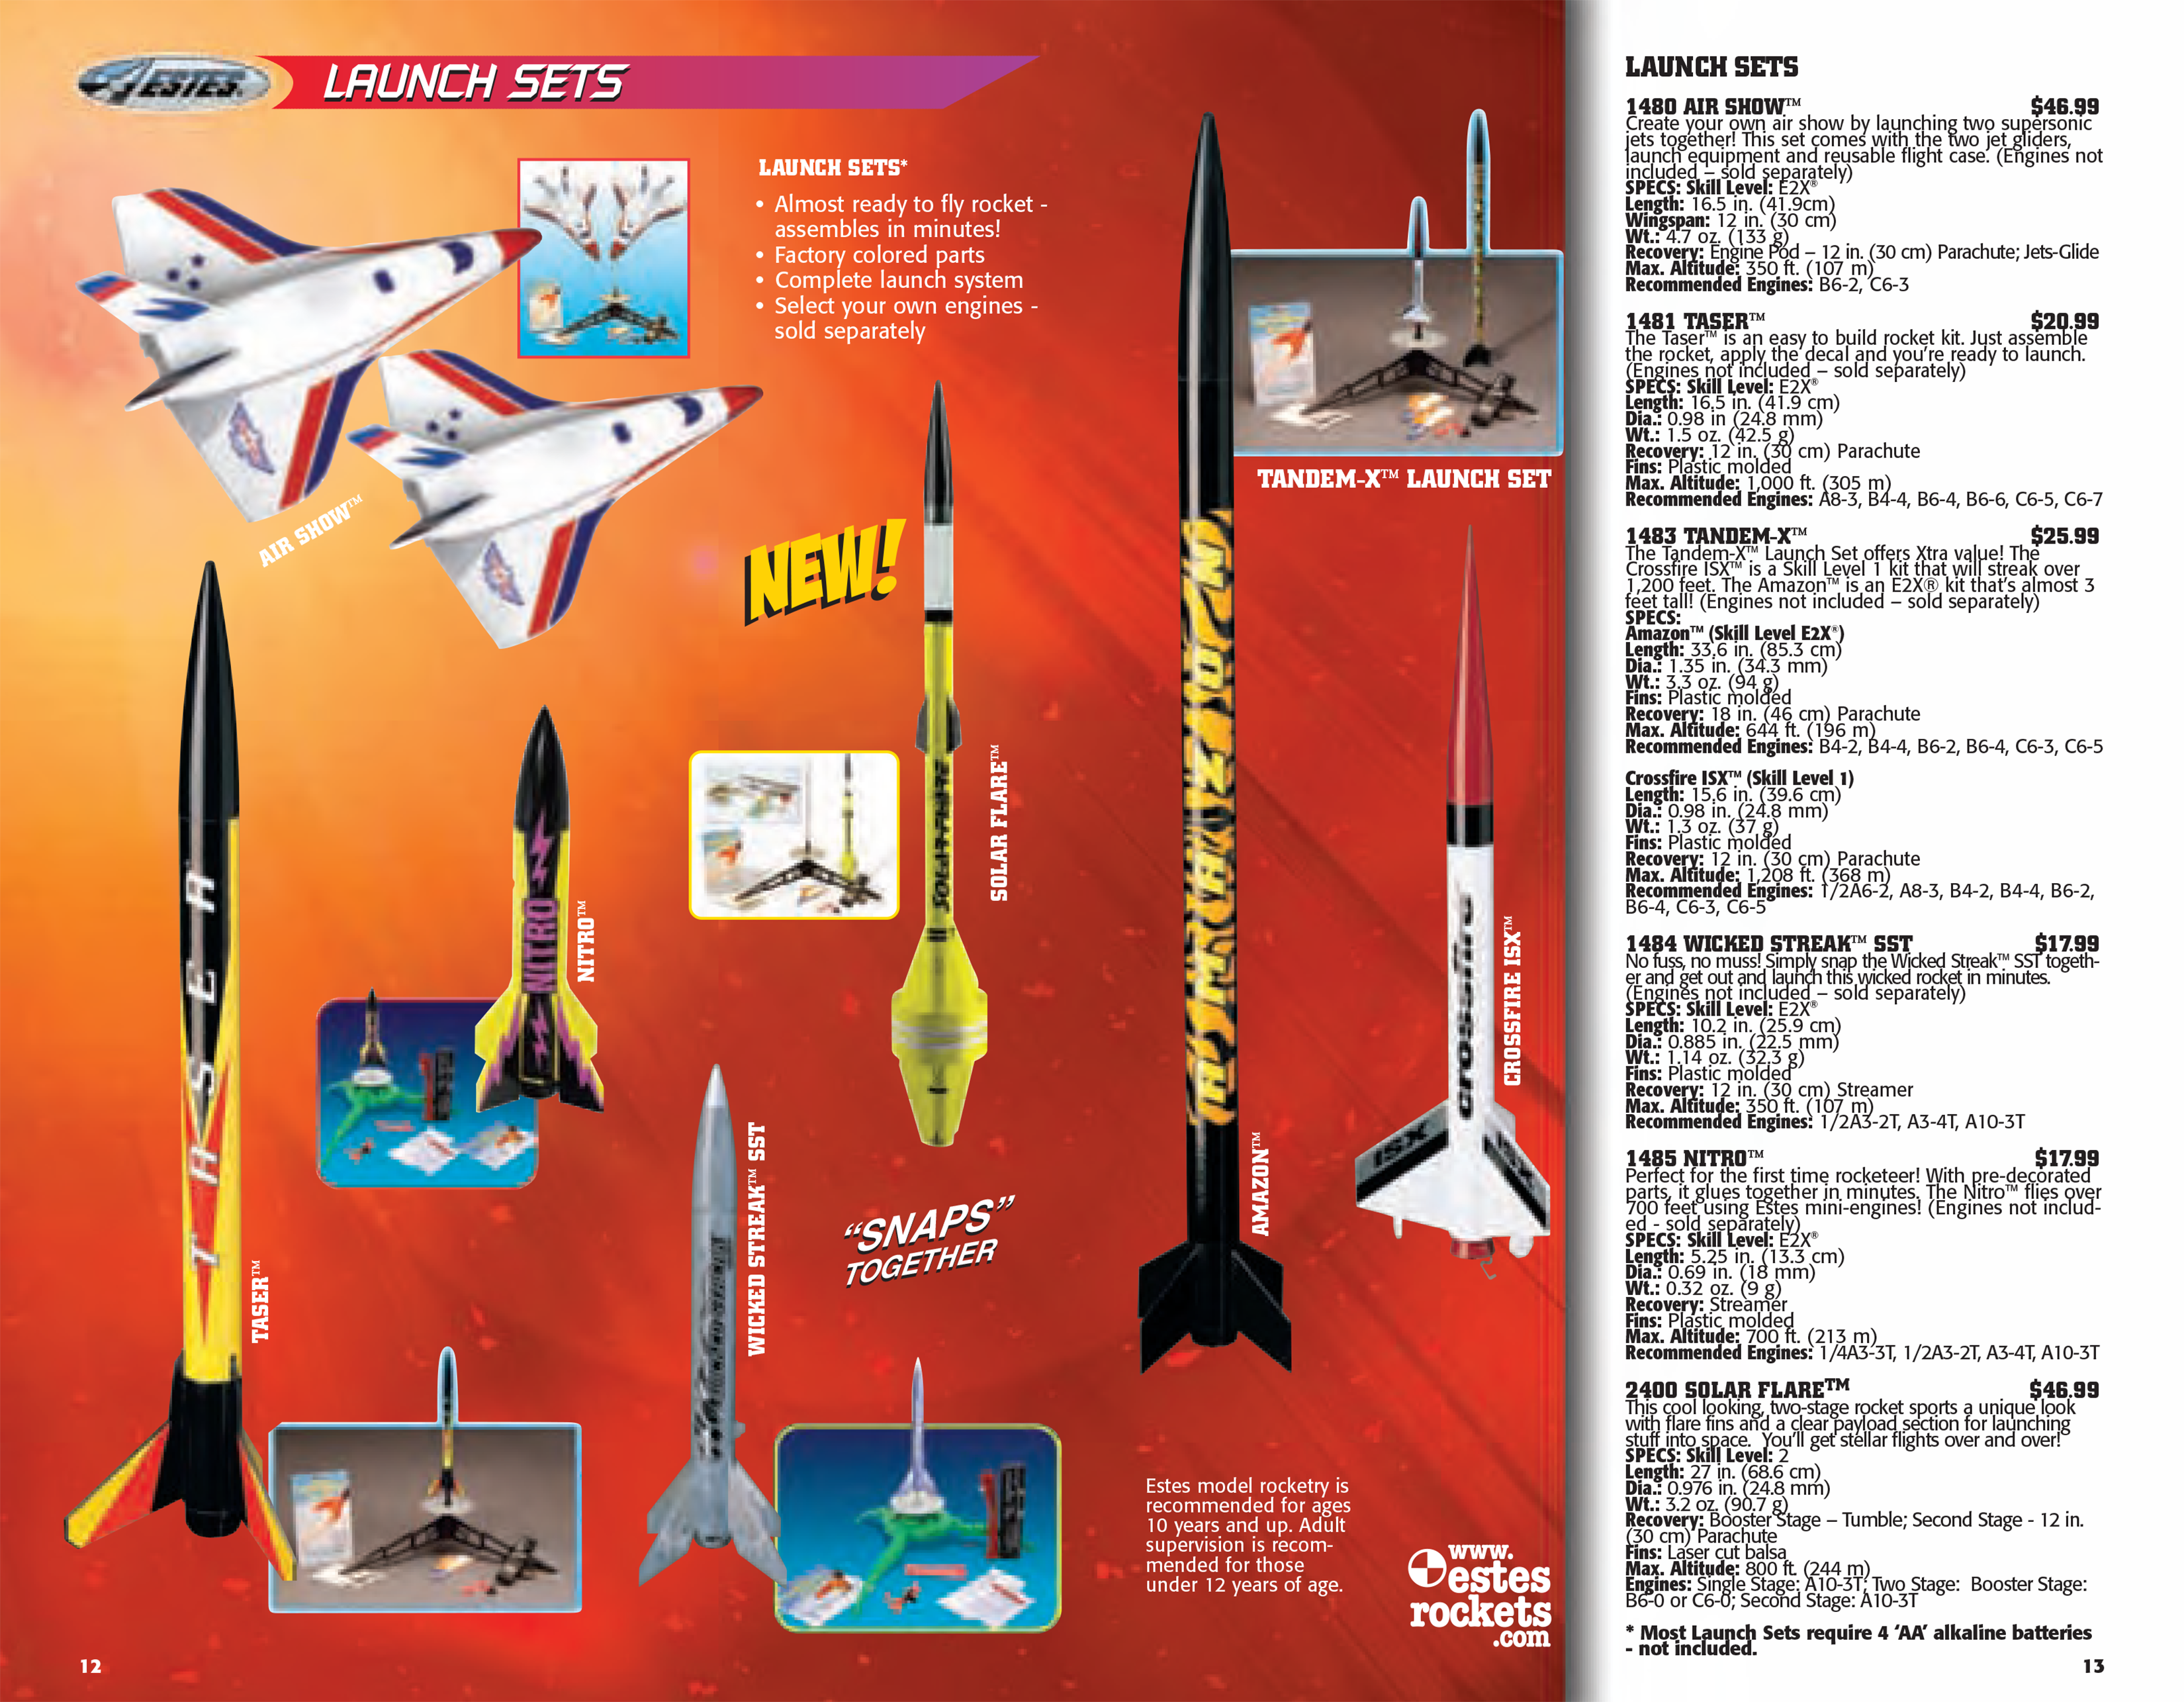 2007 Vintage Estes model rocketry catalog 